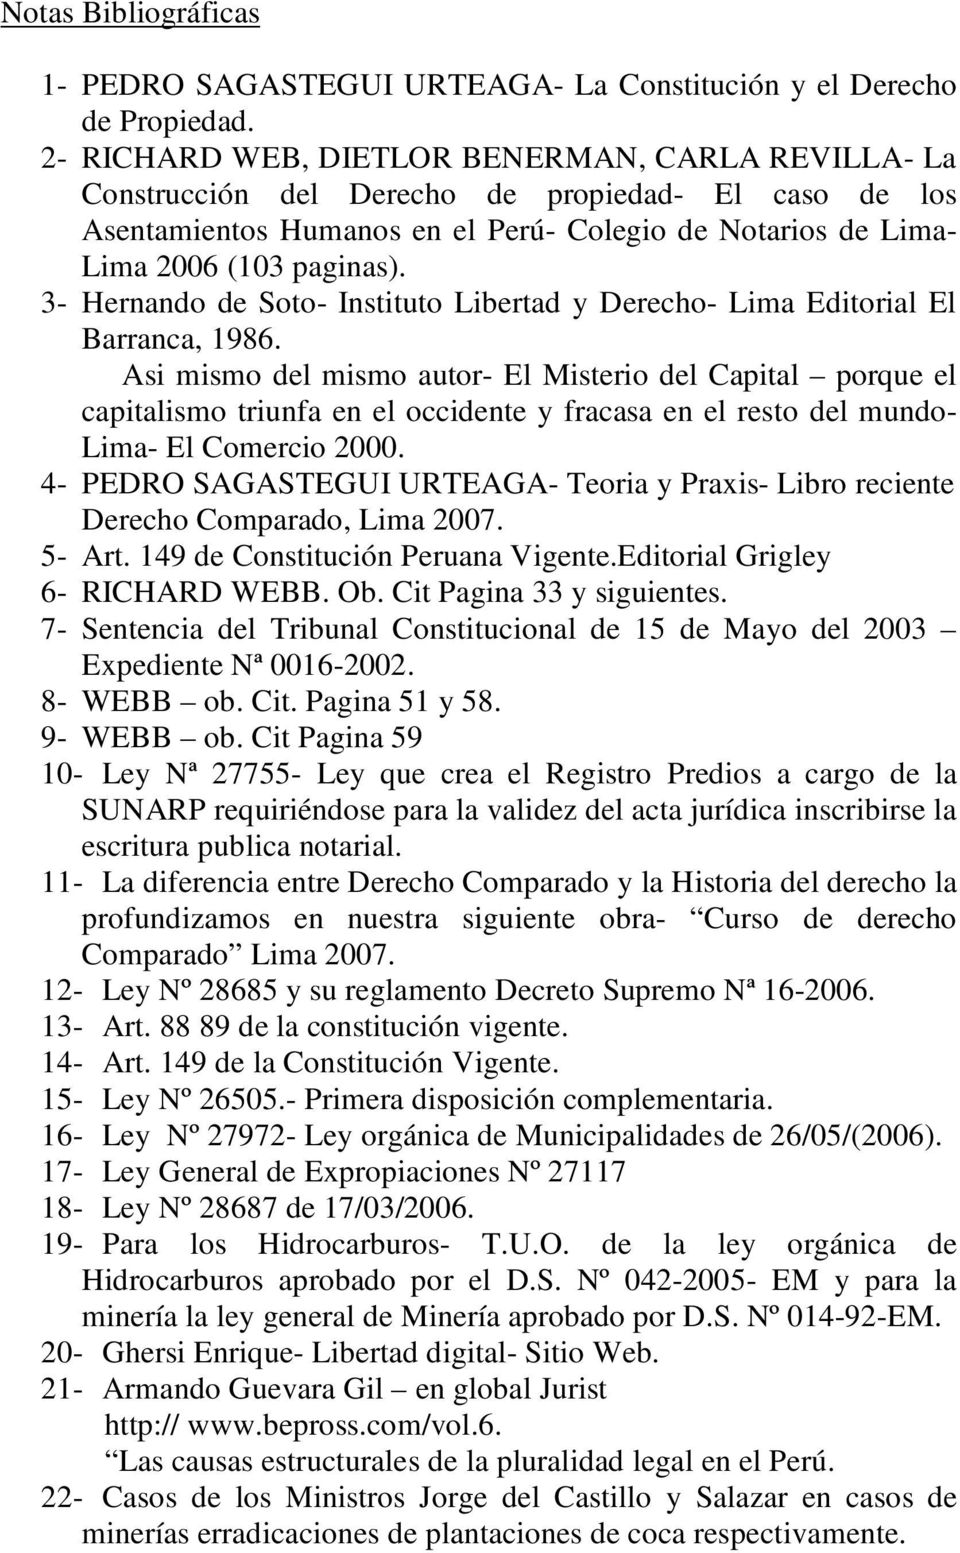 3- Hernando de Soto- Instituto Libertad y Derecho- Lima Editorial El Barranca, 1986.